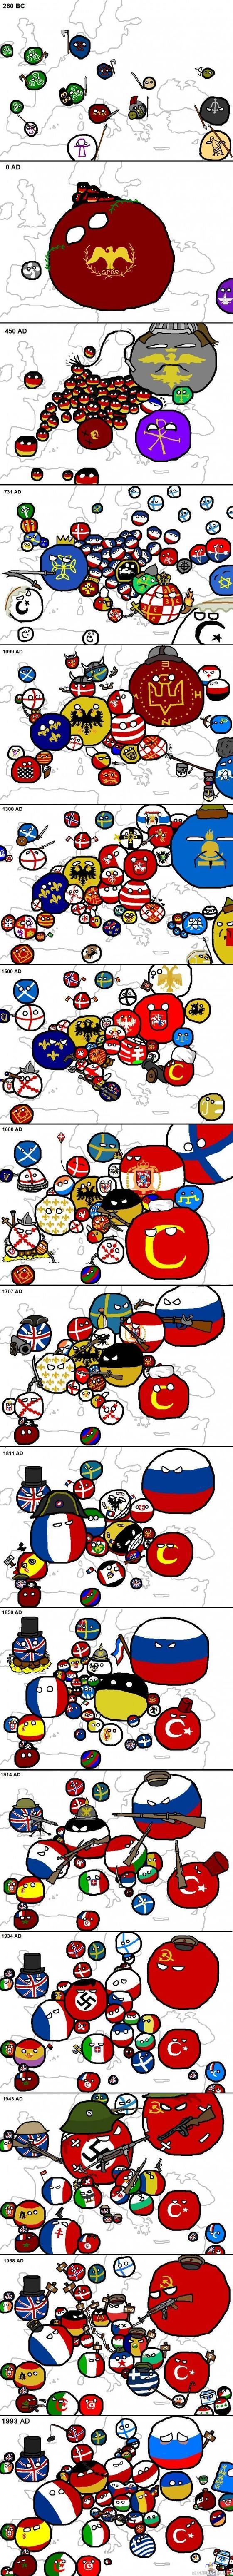 Euroopan historia -  - Tässä on euroopan historia.